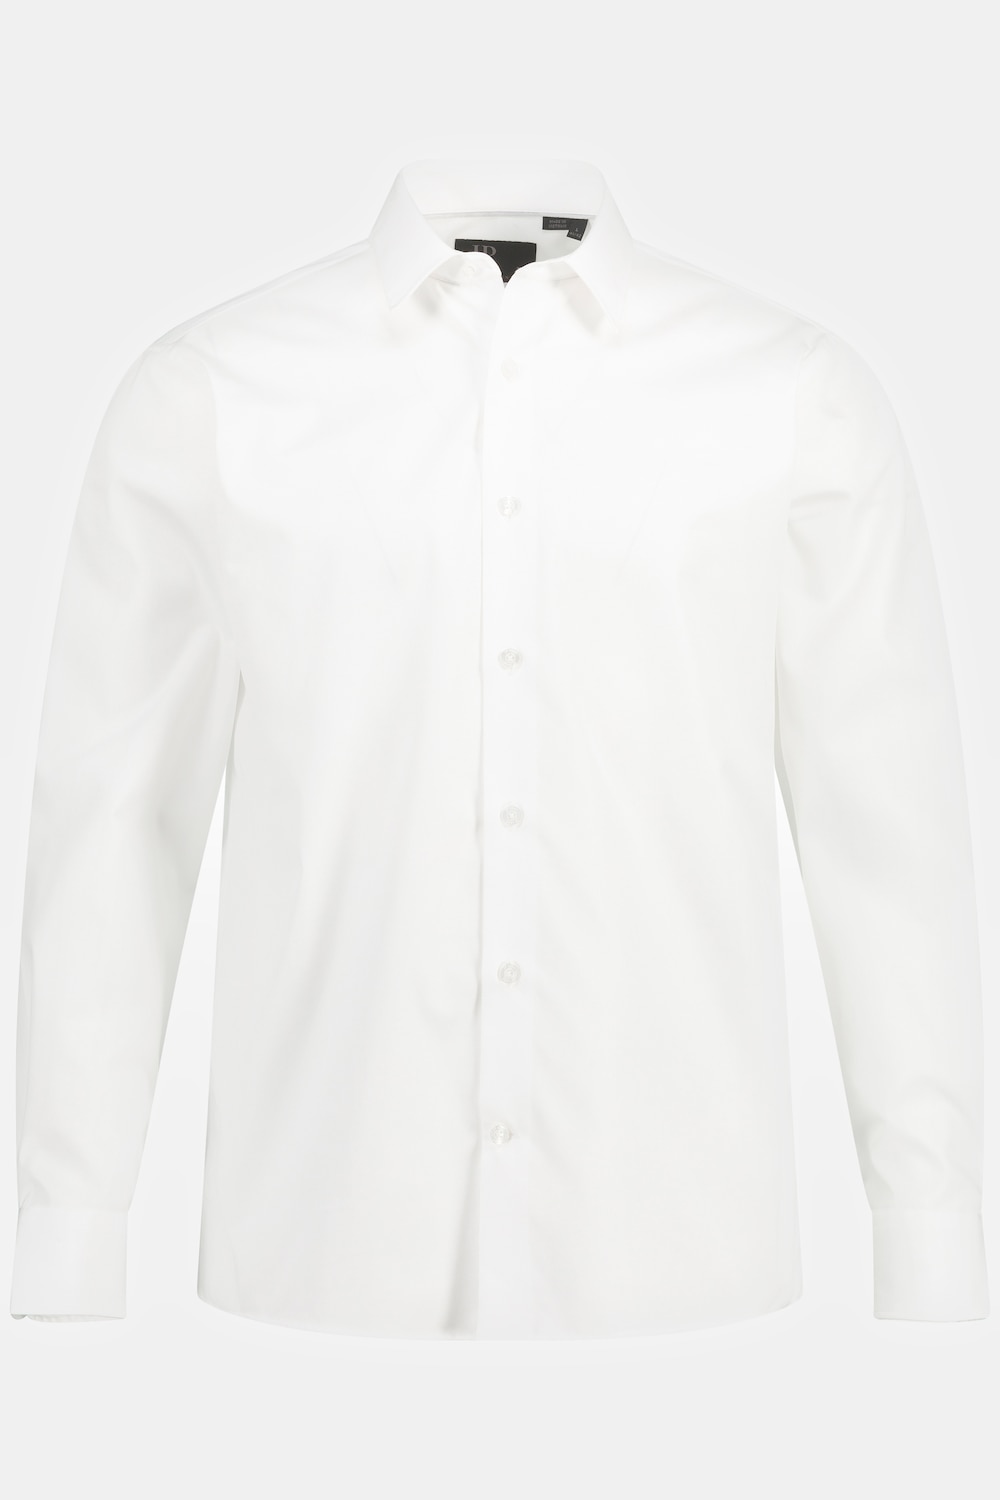 Grote Maten business overhemd, Heren, wit, Maat: 3XL, Katoen, JP1880